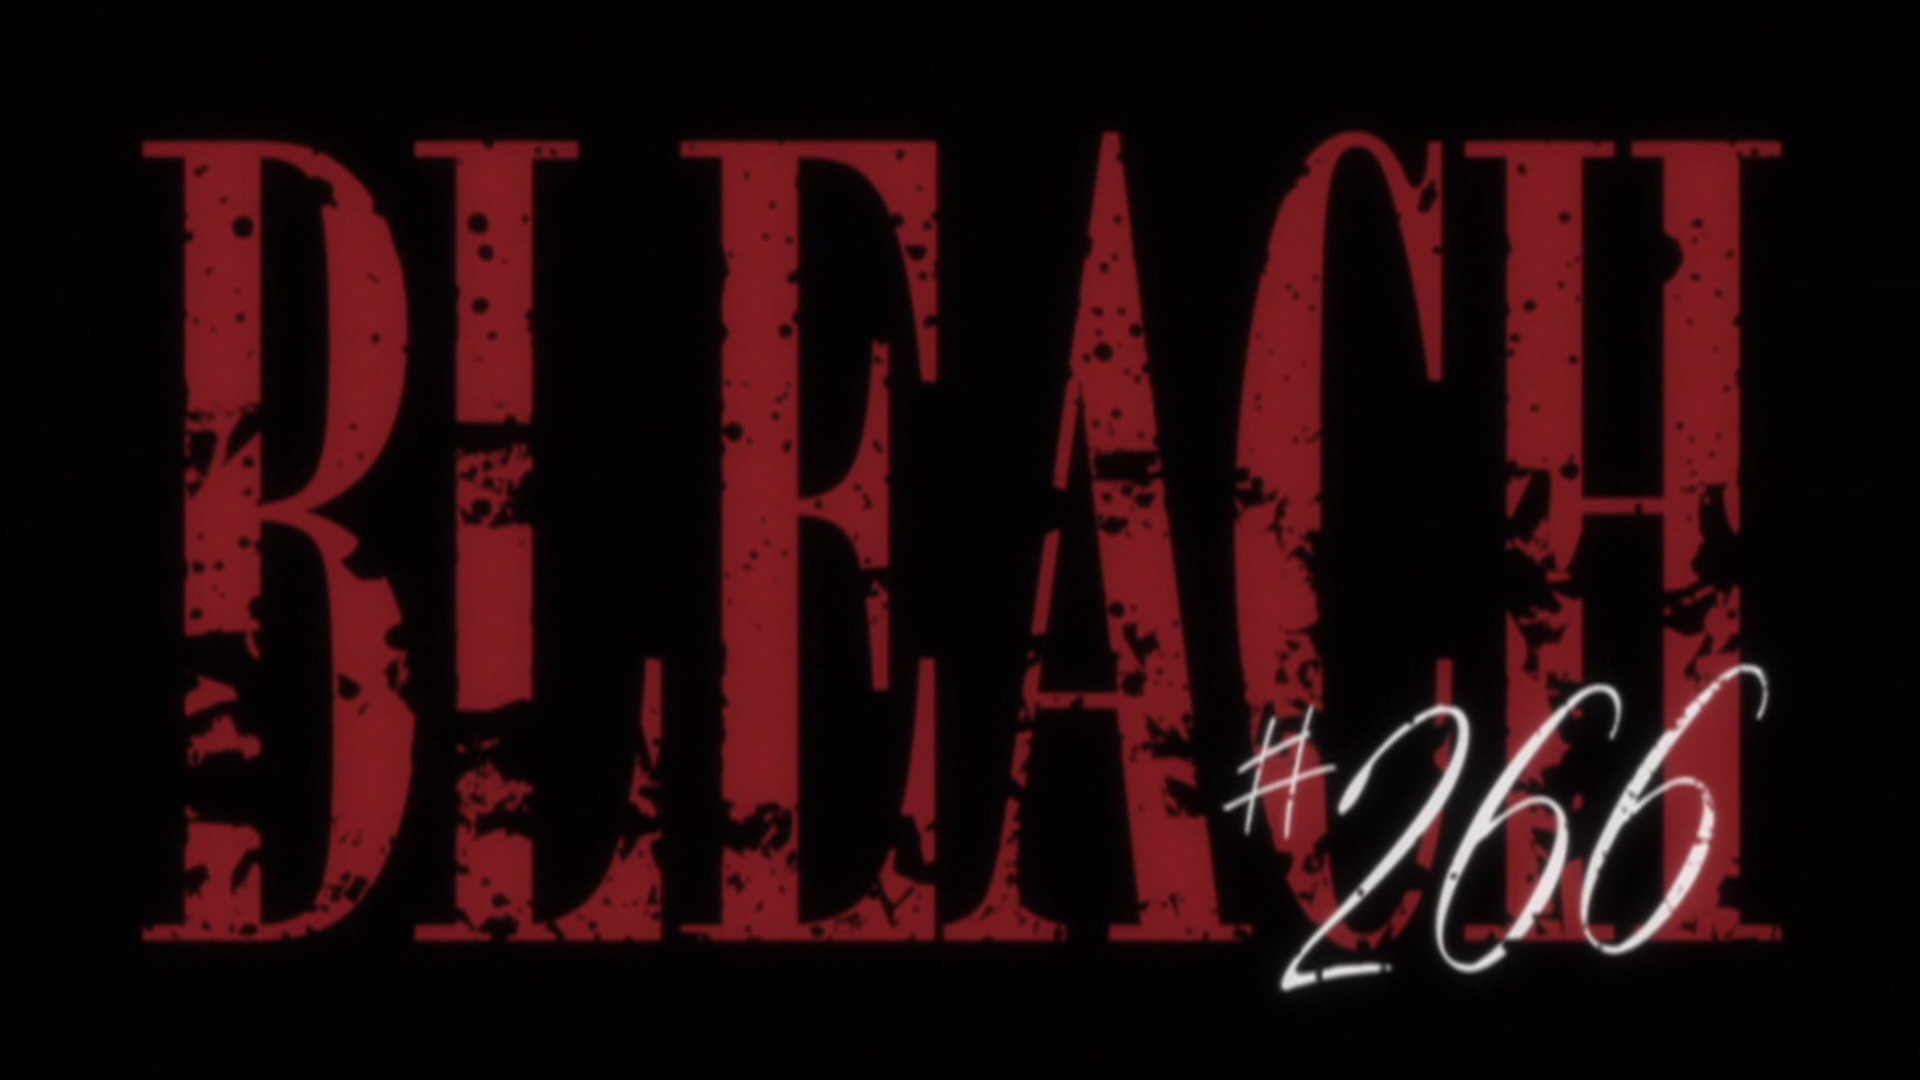 Bleach – Episode 266  Bleach episodes, Anime, Bleach anime